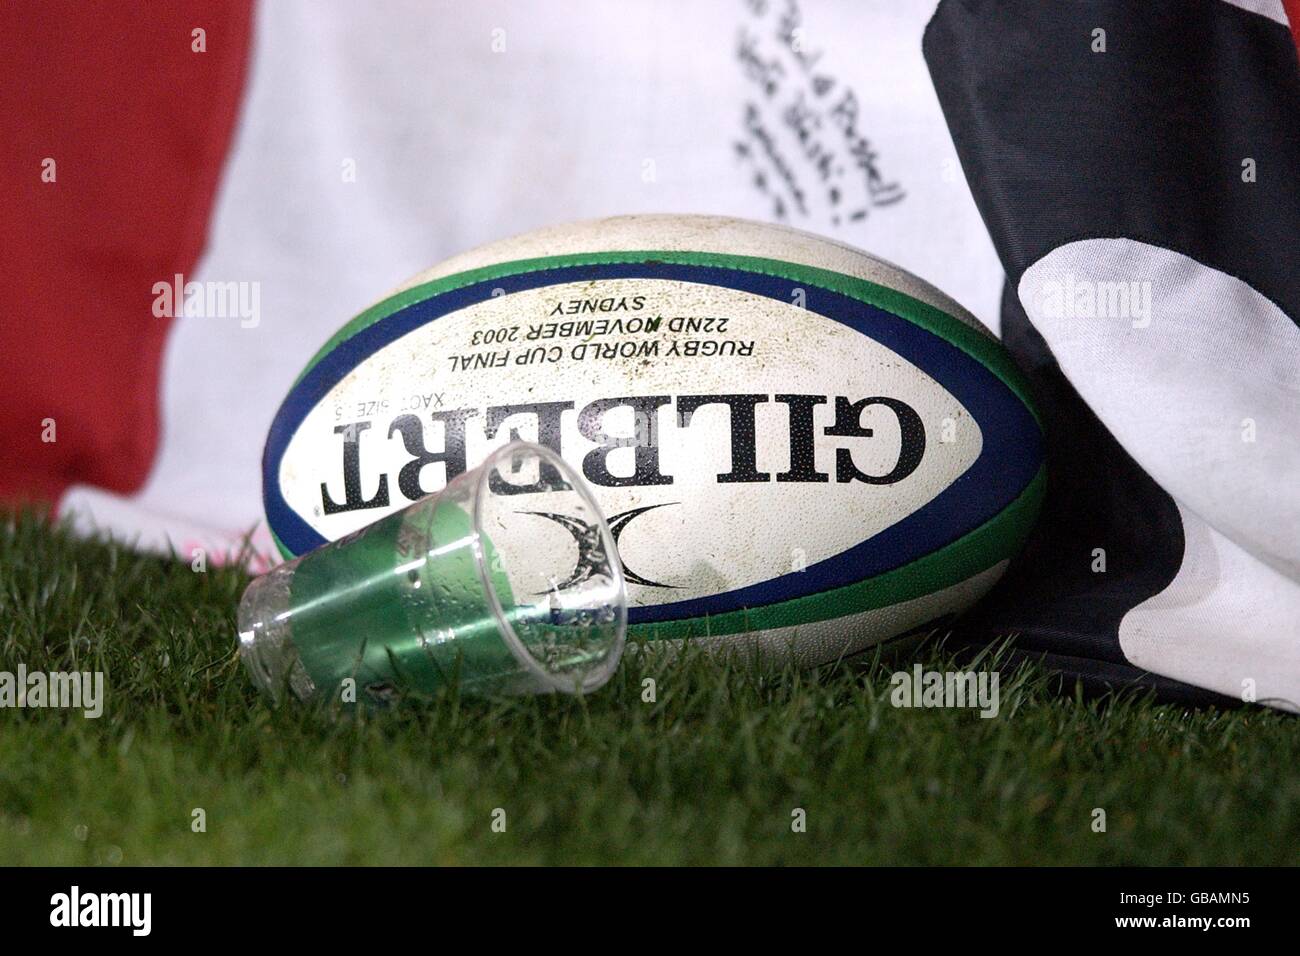 Rugby Union - coupe du monde 2003 - finale - Angleterre contre Australie.  Finale de la coupe du monde de rugby Photo Stock - Alamy